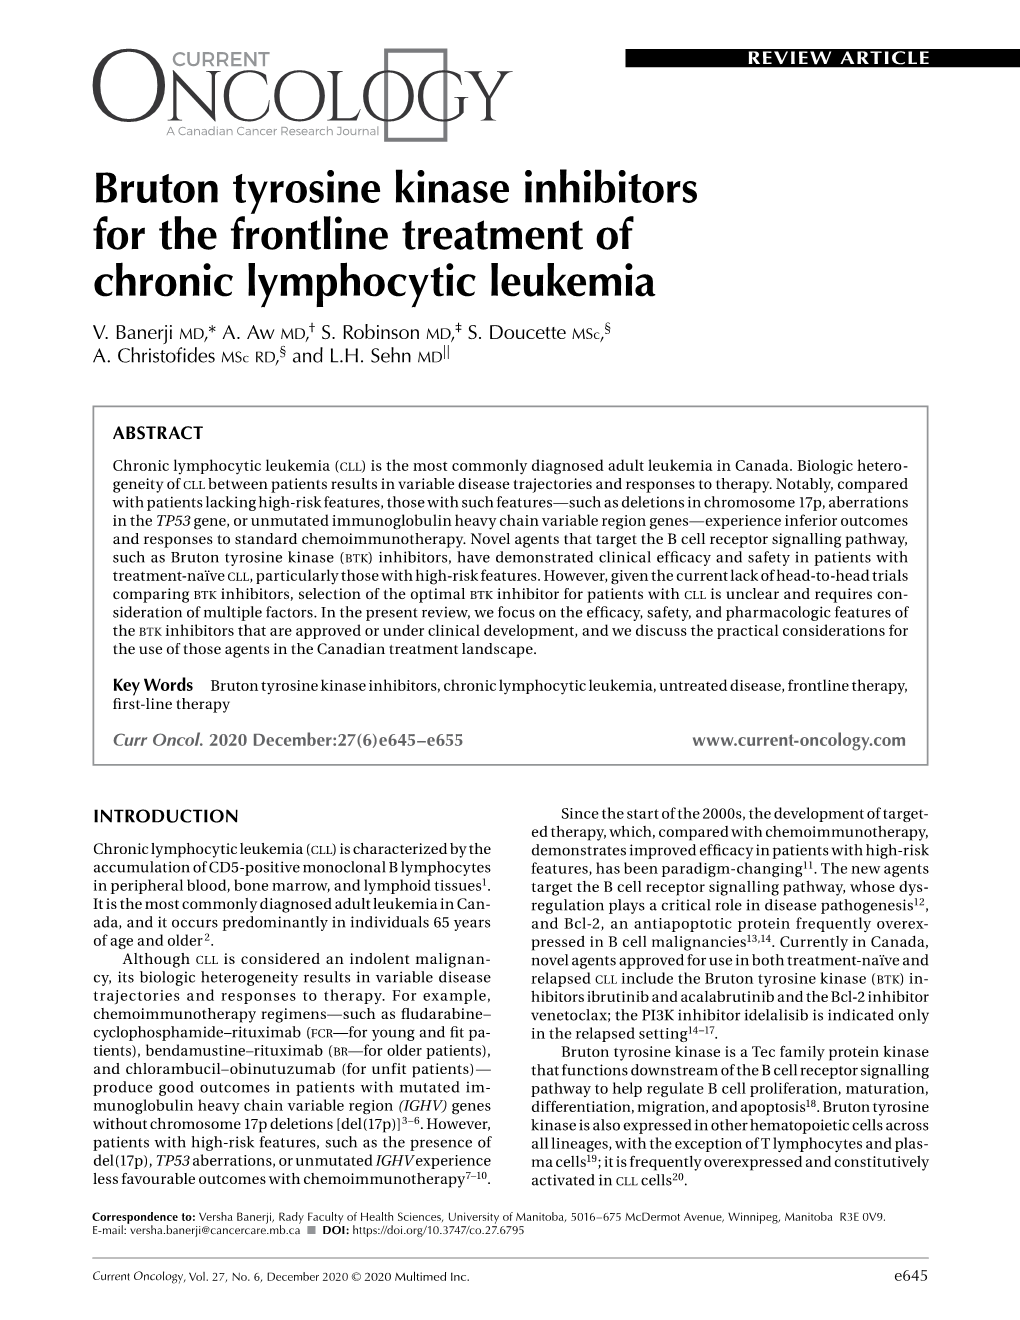 Bruton Tyrosine Kinase Inhibitors for the Frontline Treatment of Chronic Lymphocytic Leukemia